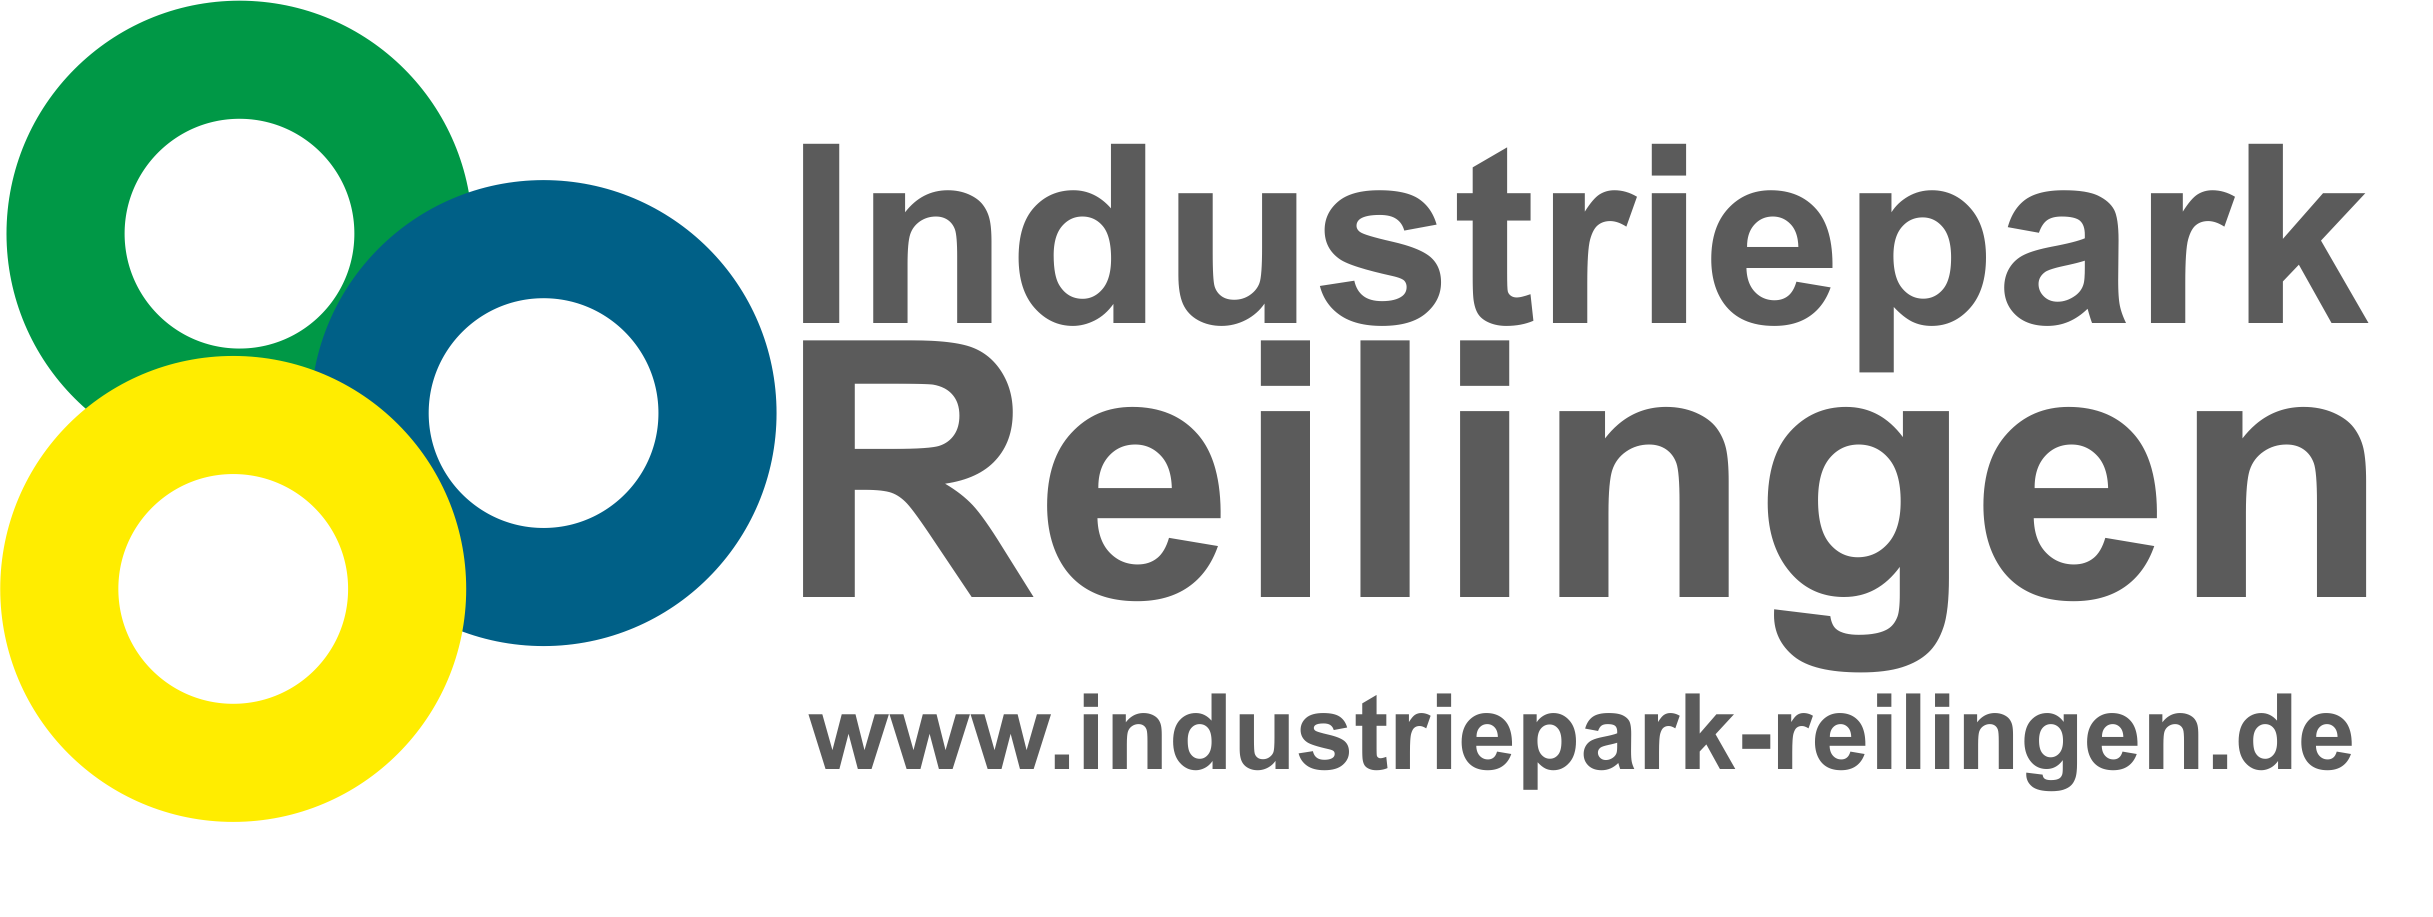 Industriepark-Reilingen Logo.png